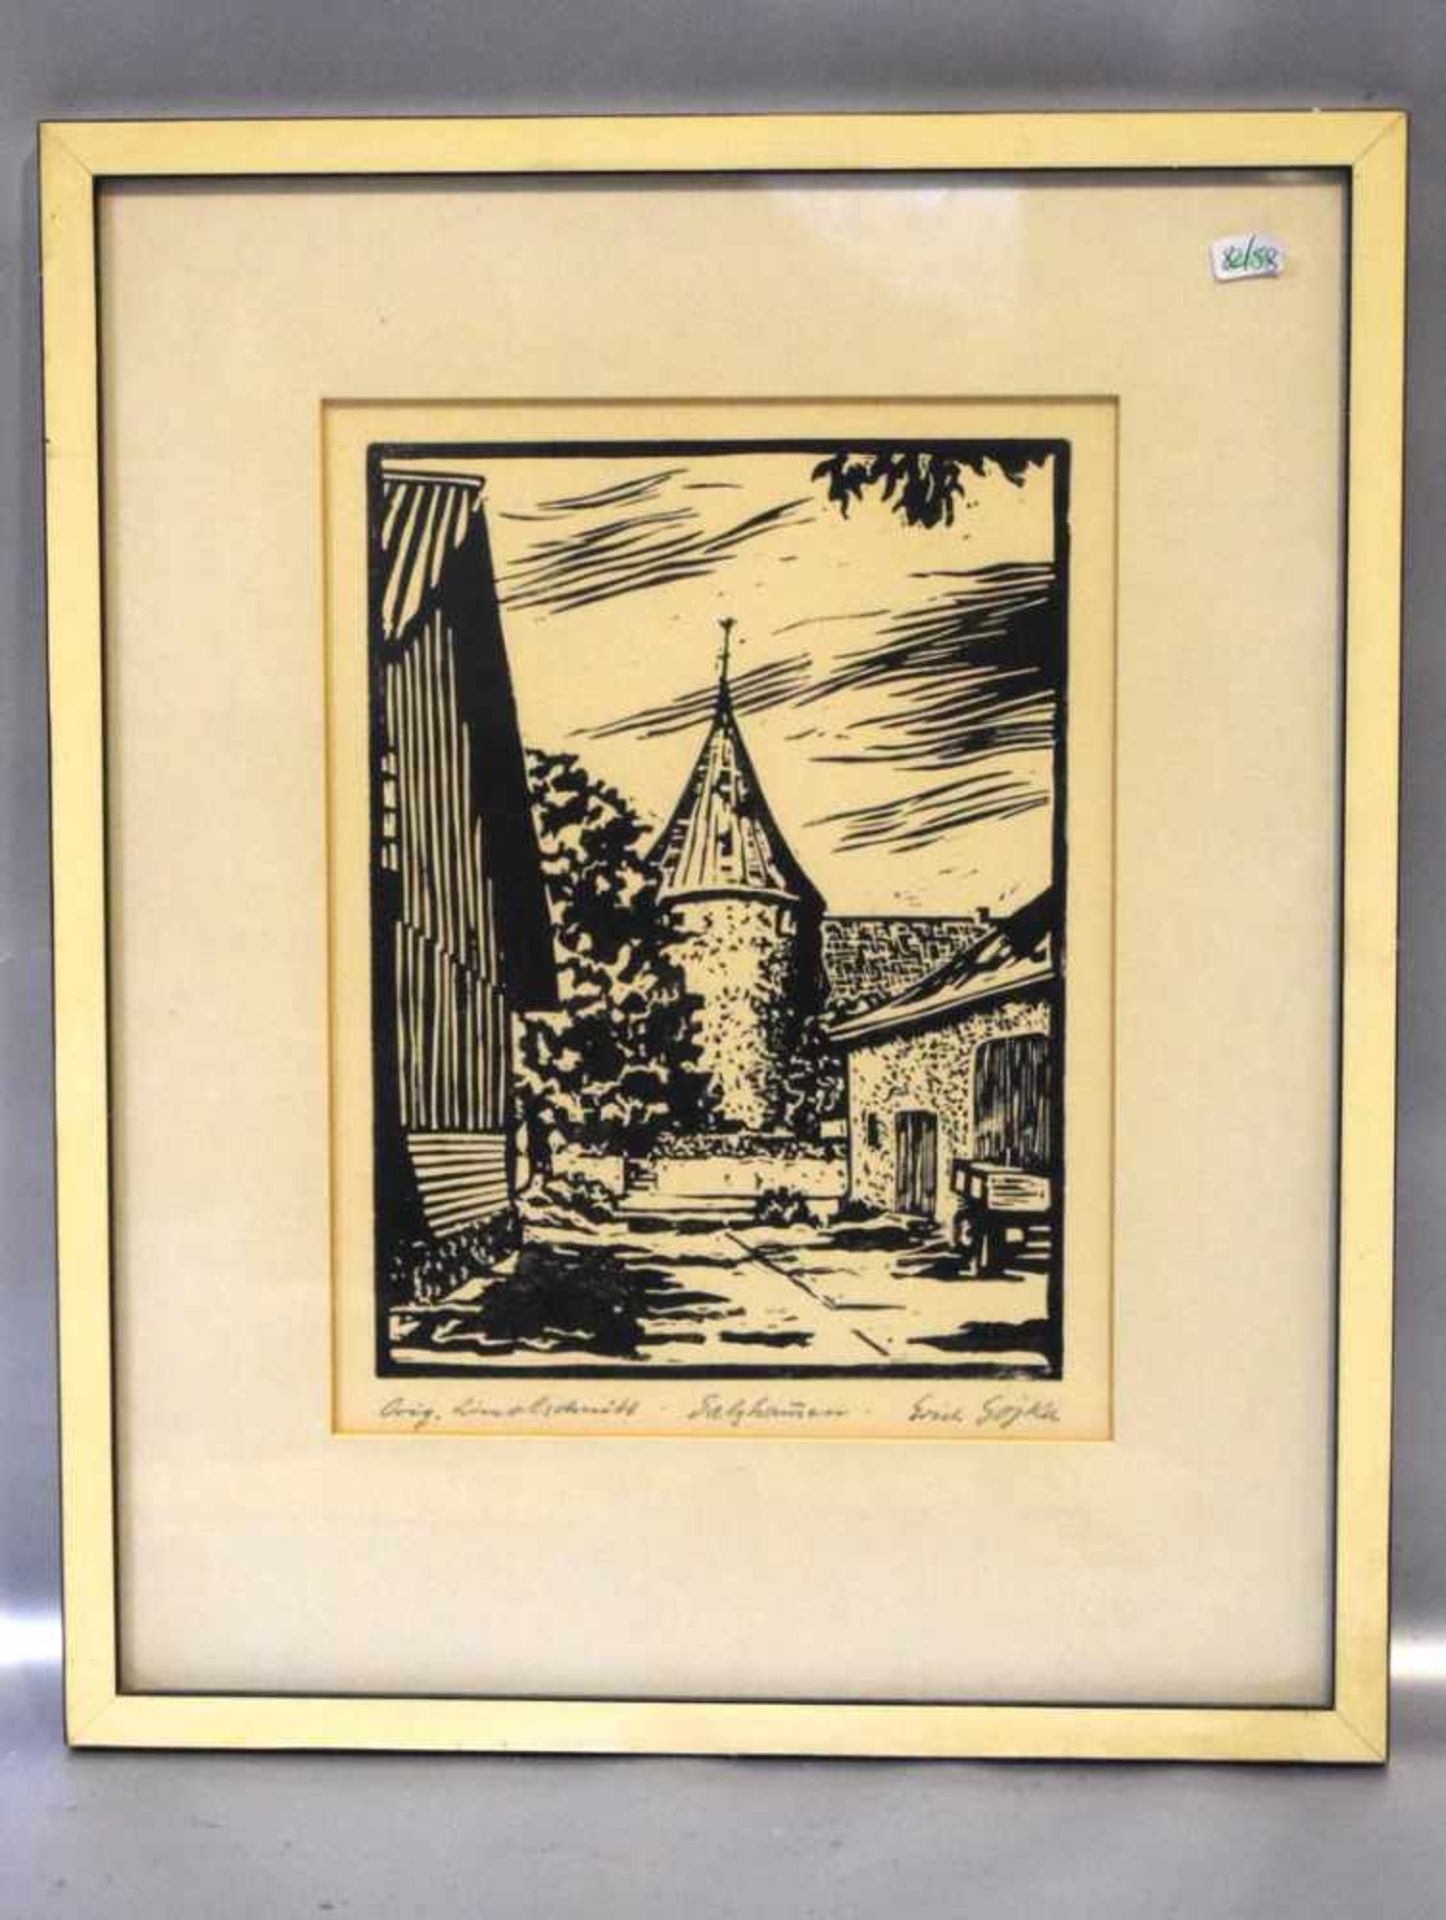 LinolschnittTeilansicht einer Stadt mit Turm, u.sign. und dat., 20 X 27 cm, im Rahmen